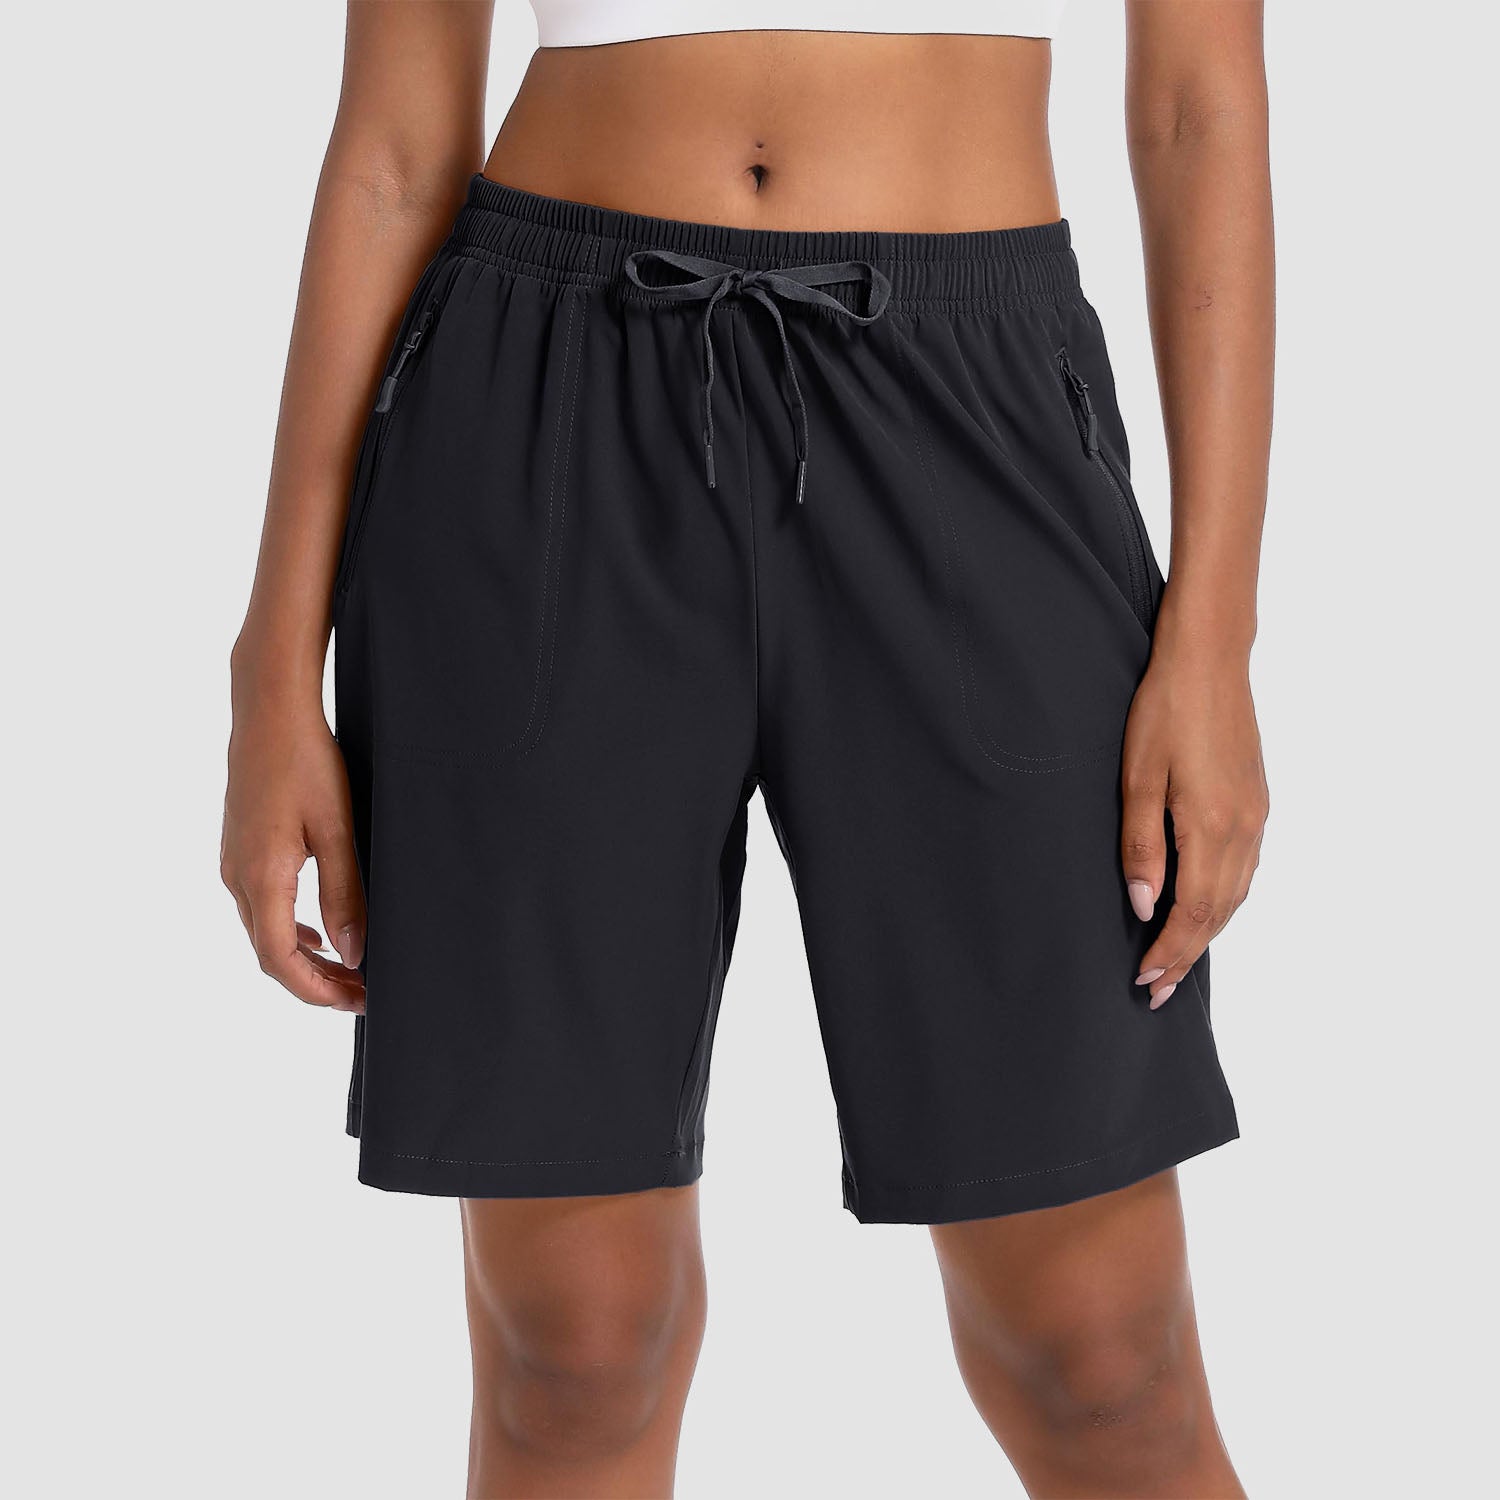 KEFITEVD Summer Quick Dry Hiking Shorts Women Lightweight Zip